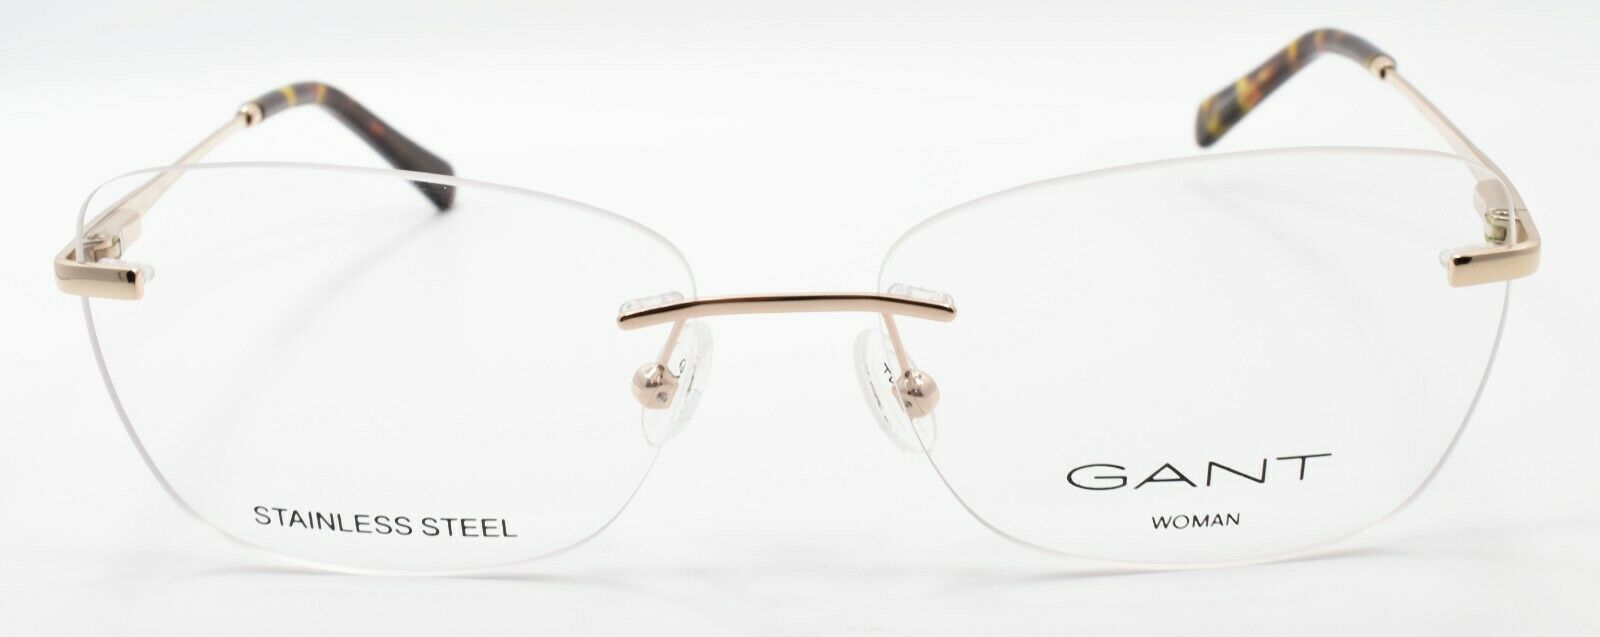 2-GANT GA4098 032 Women's Eyeglasses Frames Rimless 54-15-140 Pale Gold-889214147639-IKSpecs